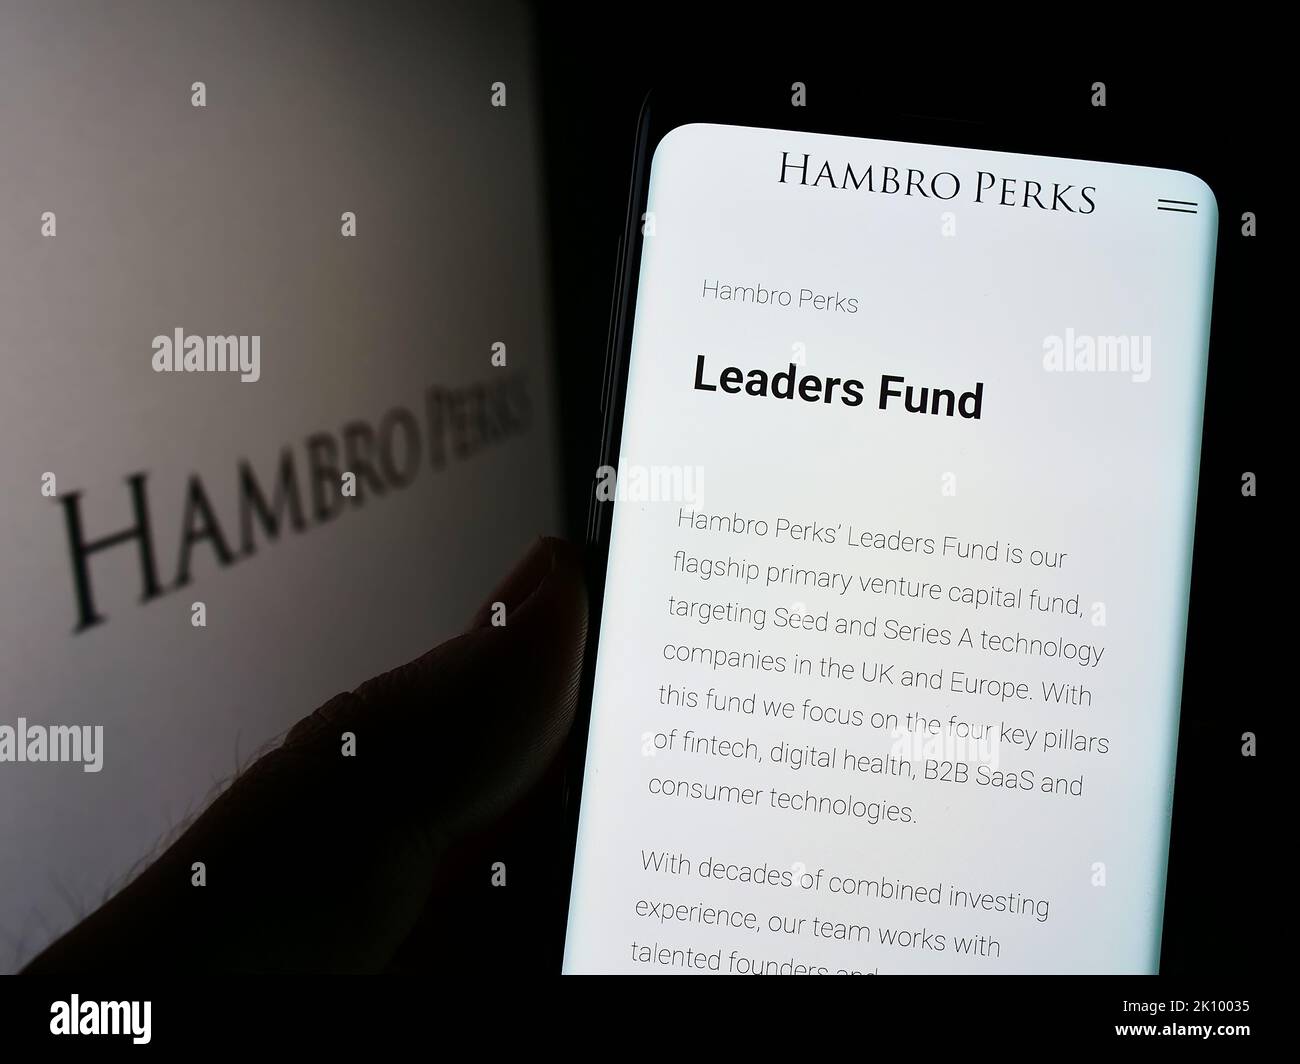 Persona che tiene il cellulare con il Web page della società britannica di investimento Hambro Perks Limited sullo schermo con il logo. Messa a fuoco al centro del display del telefono. Foto Stock